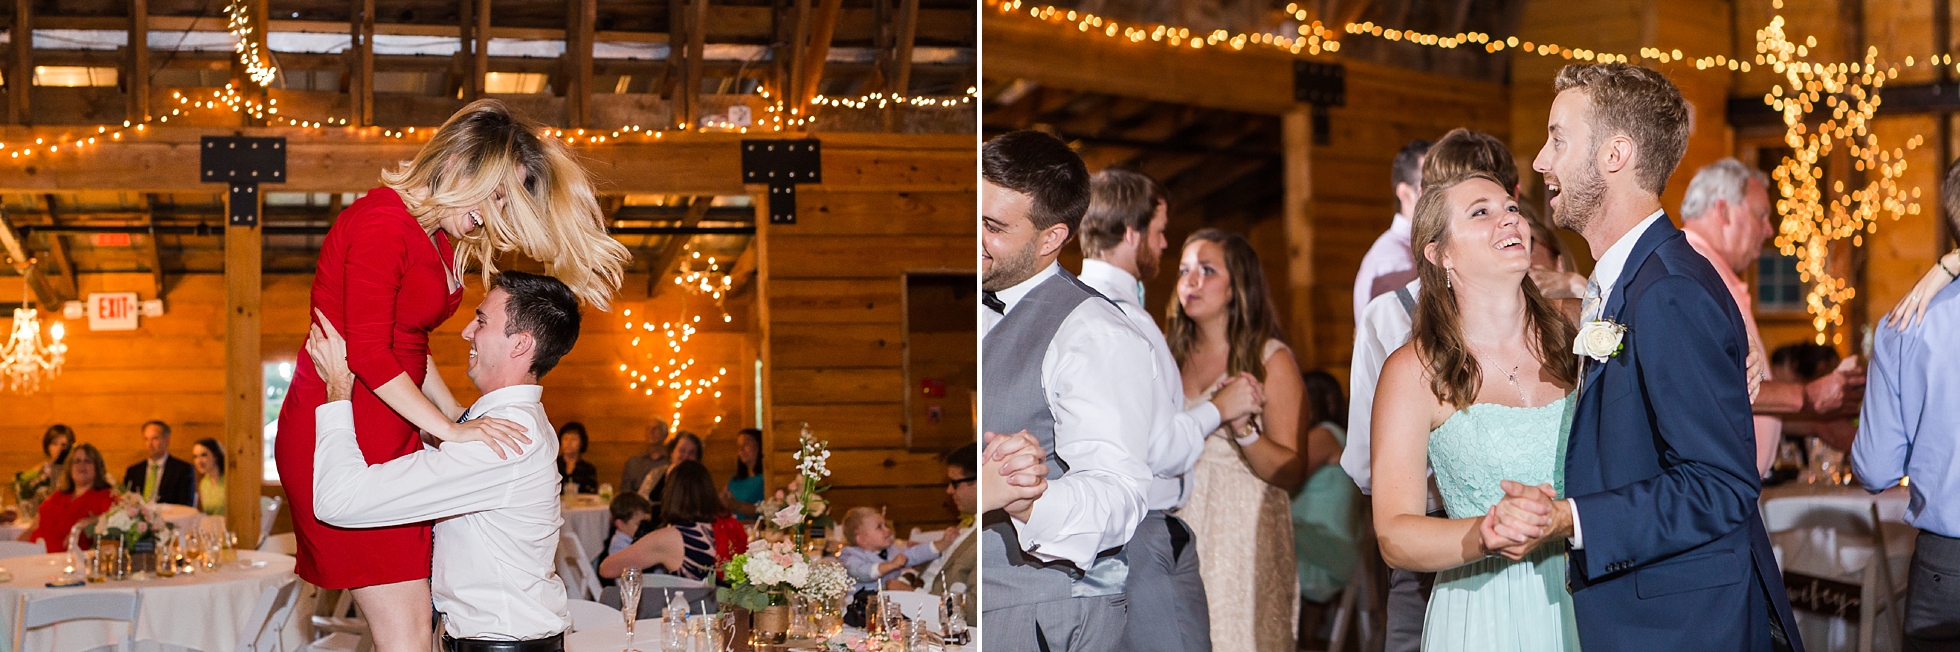 dancing 9 oaks farm barn wedding reception